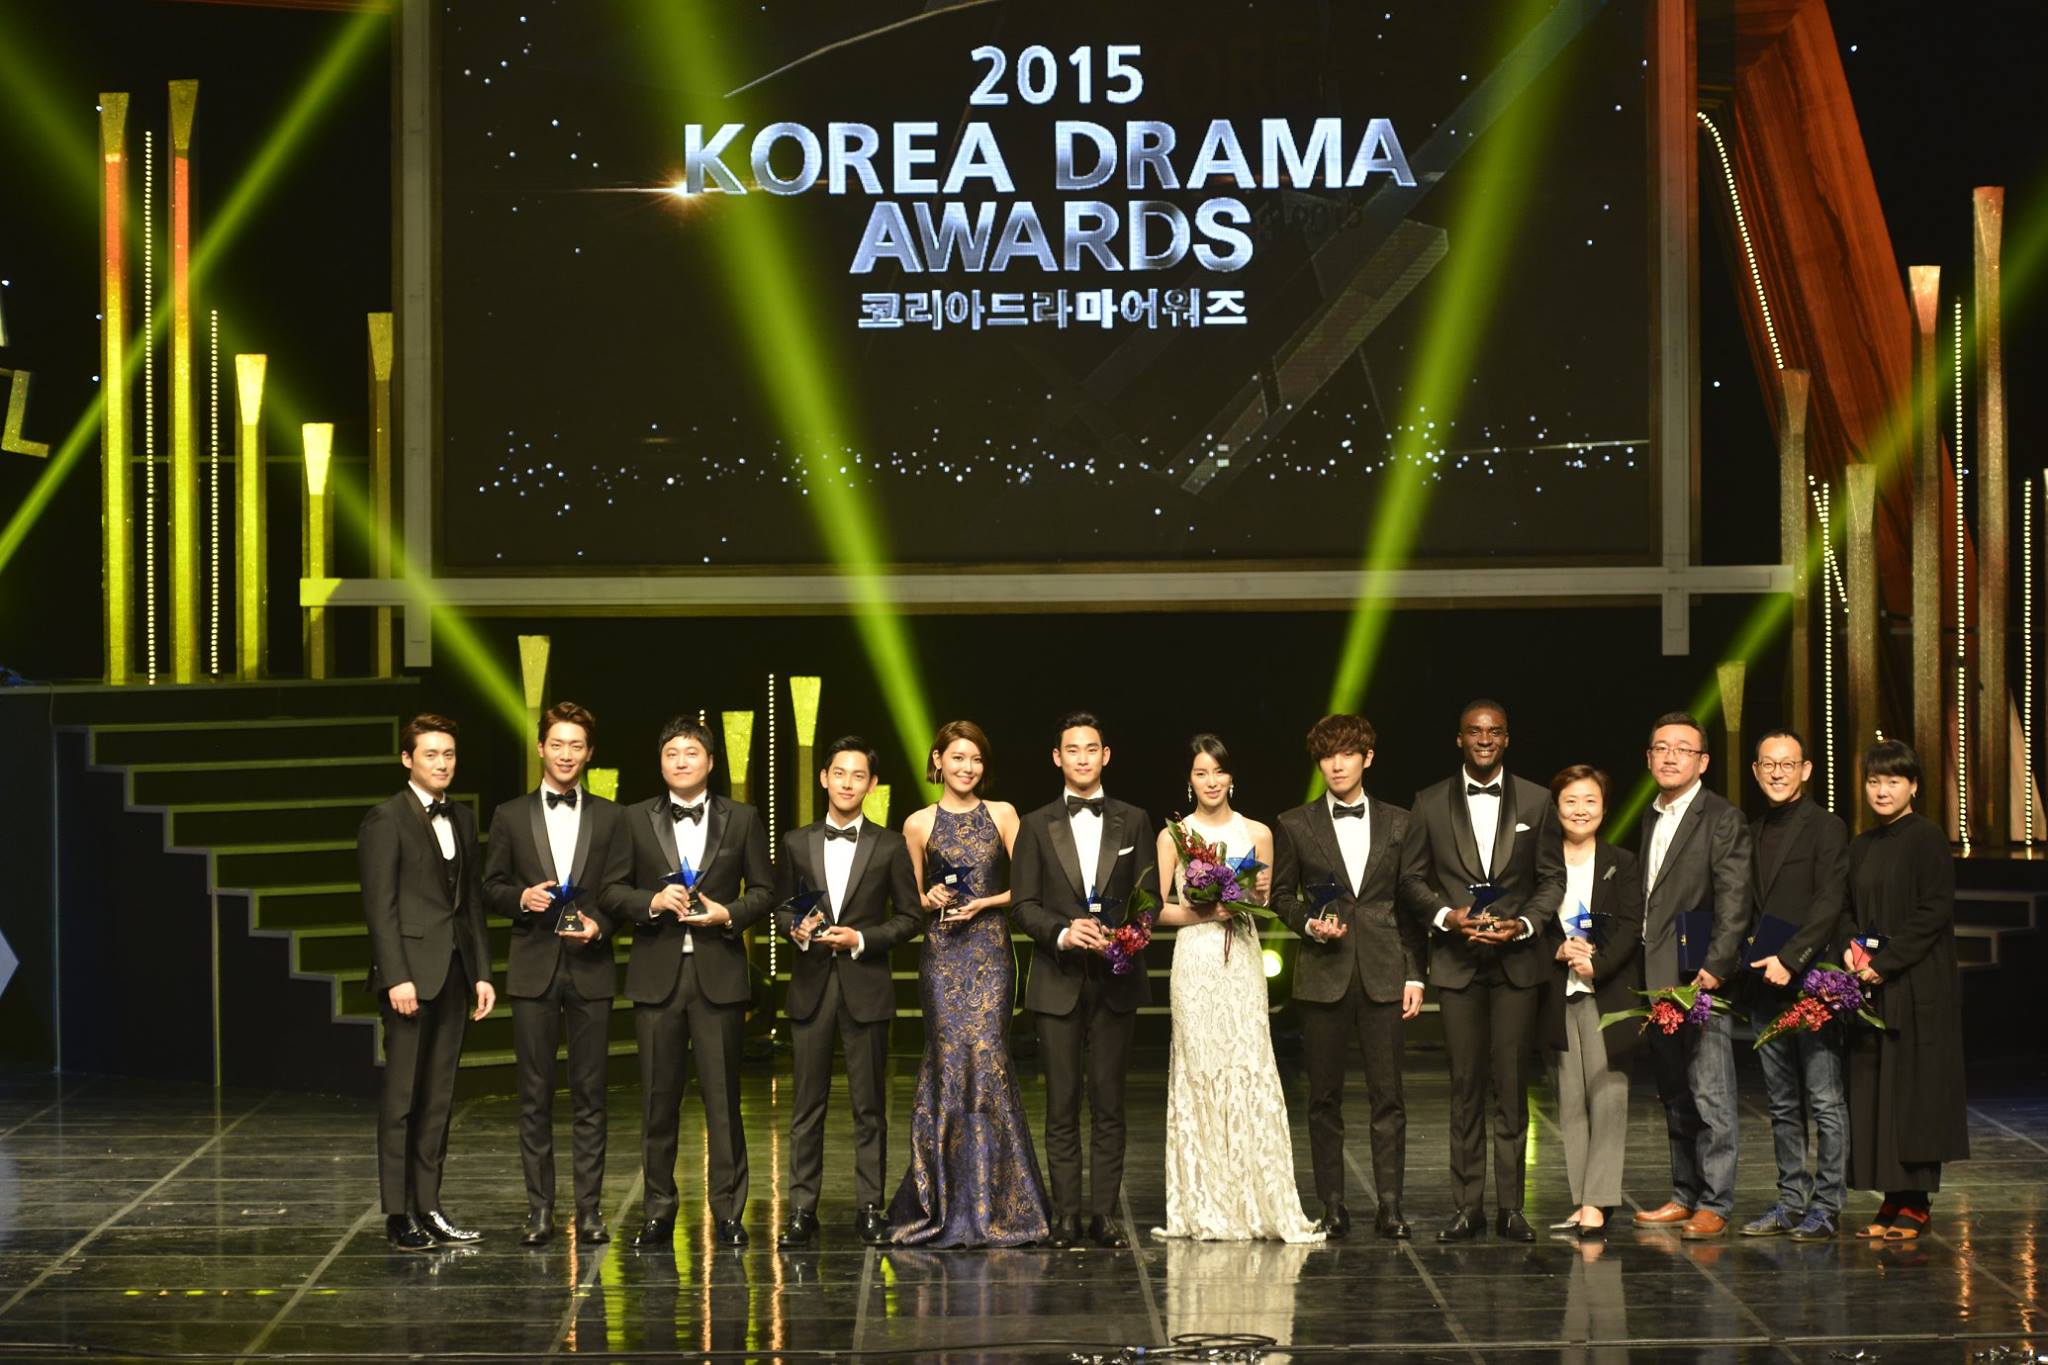 Korea Drama Awards ФБ (запрещено в РФ)